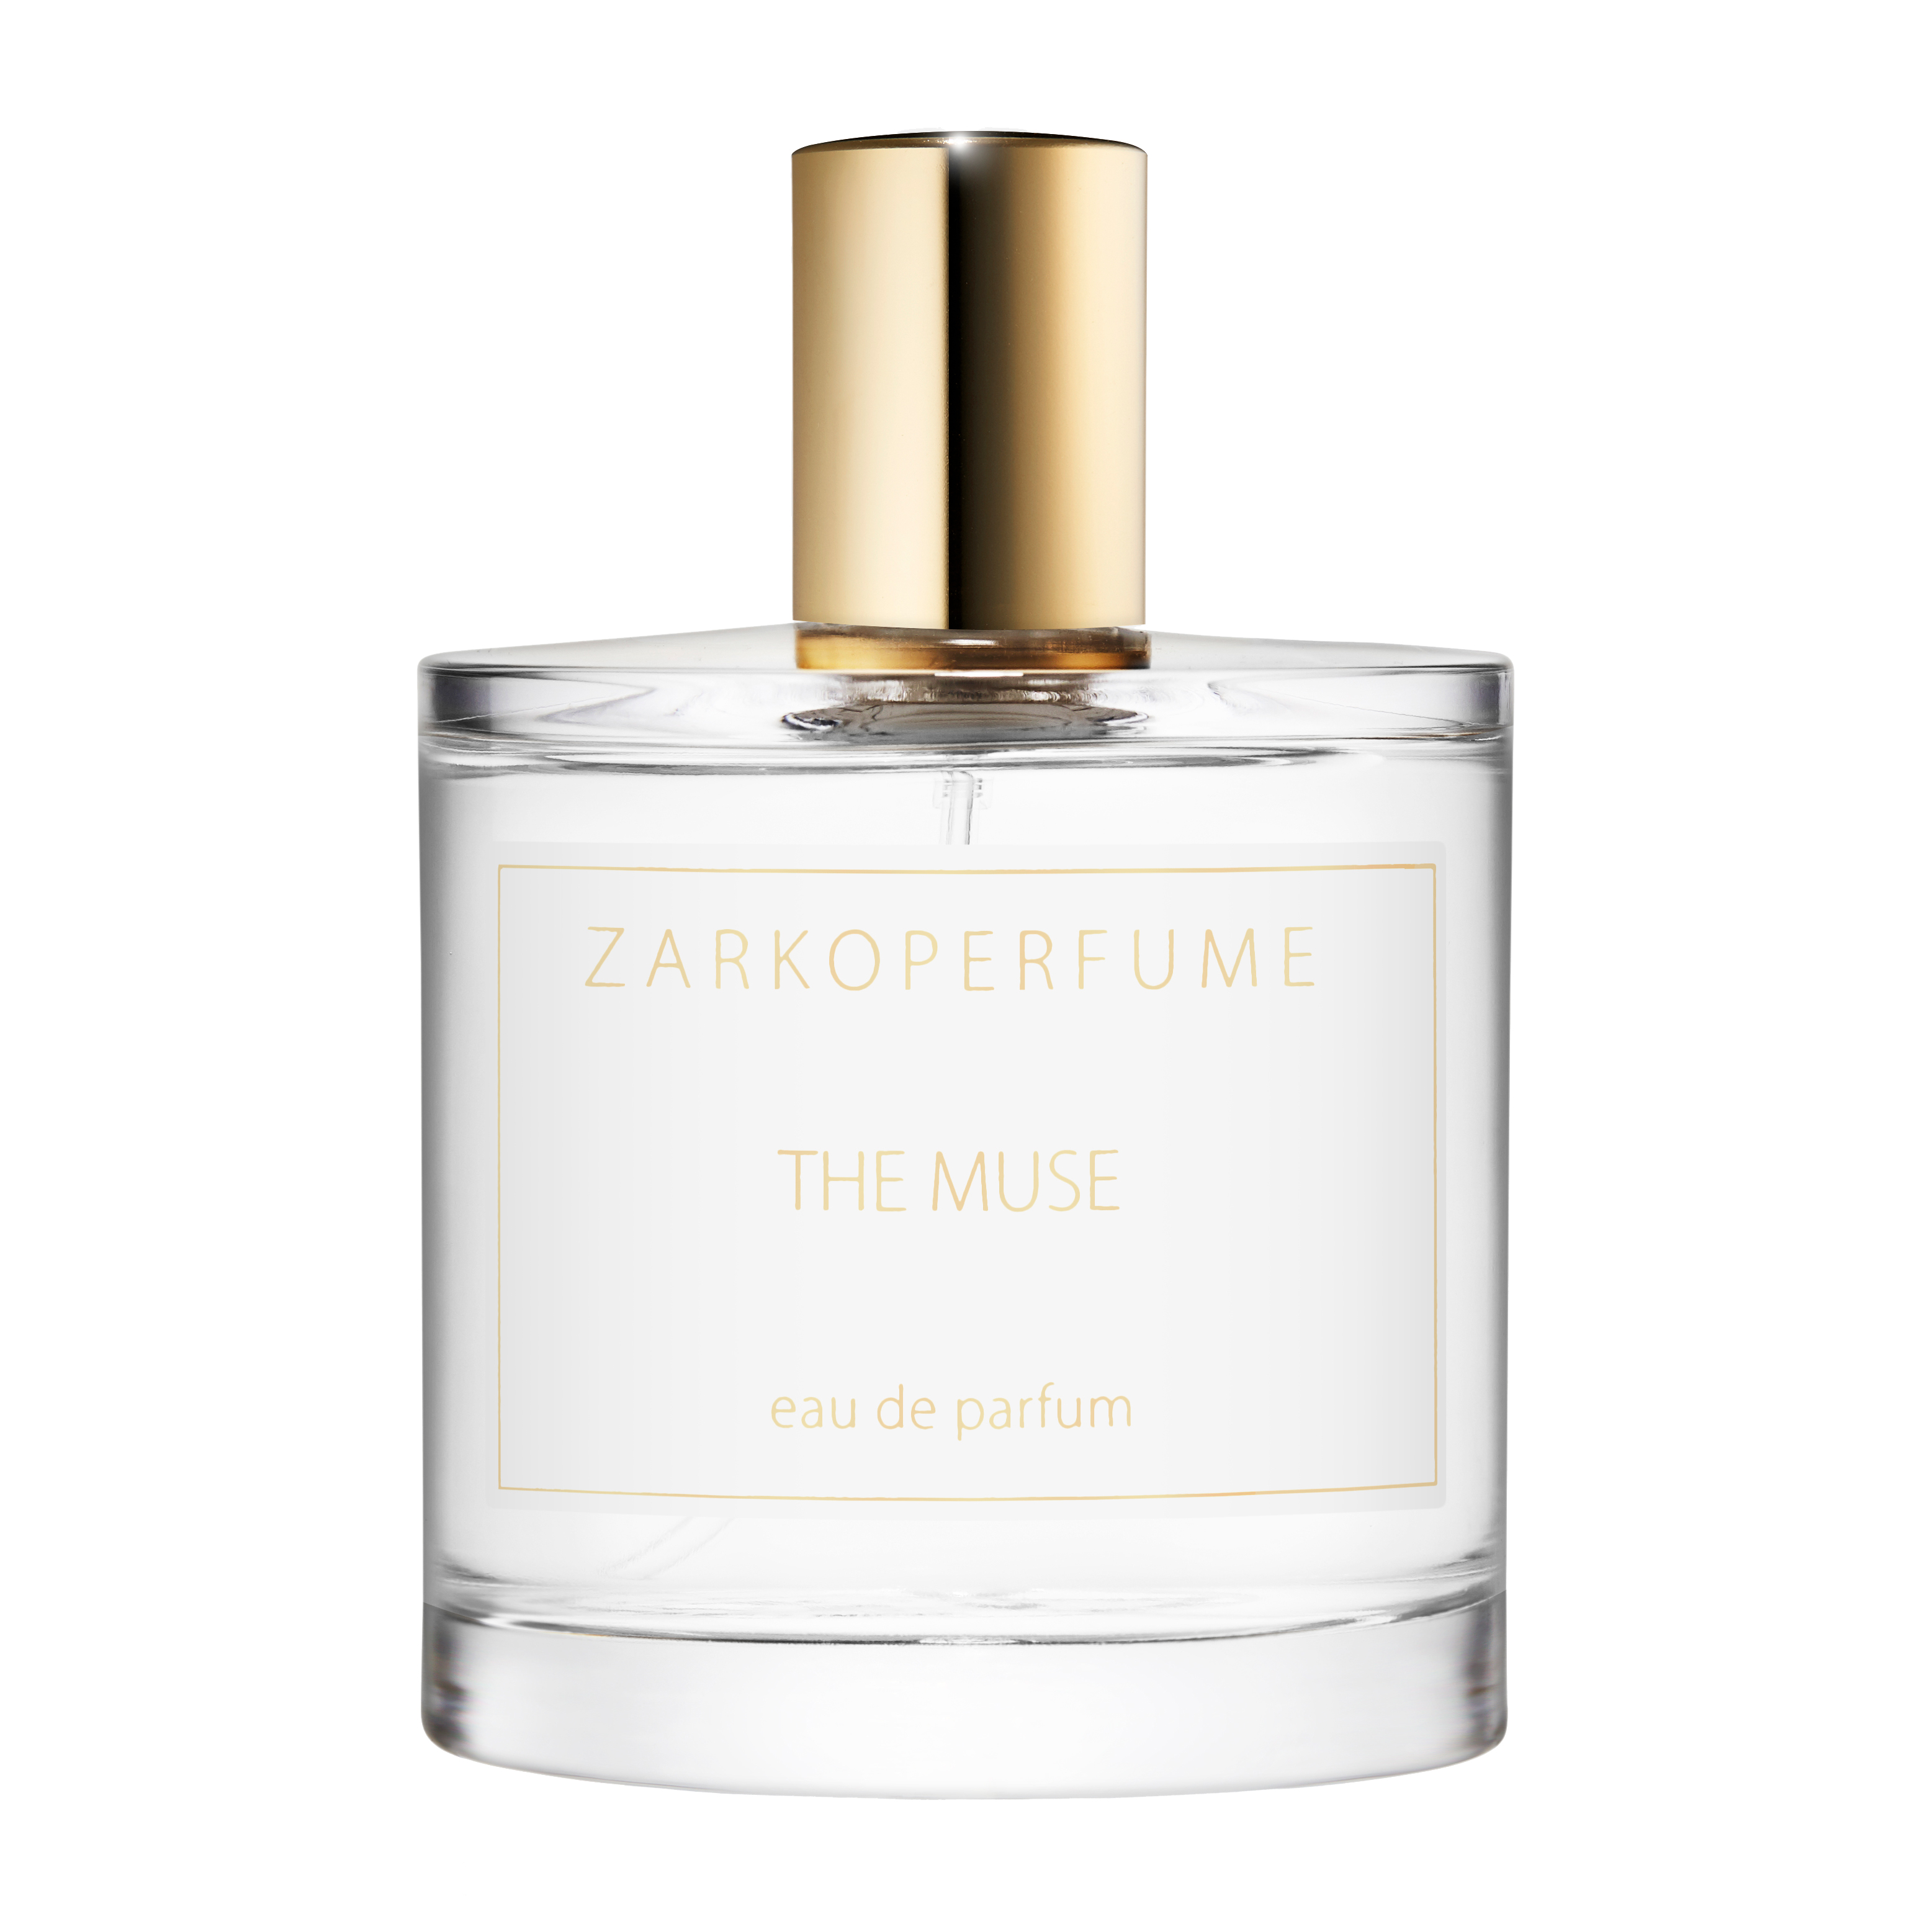 The Muse Eau de Parfum